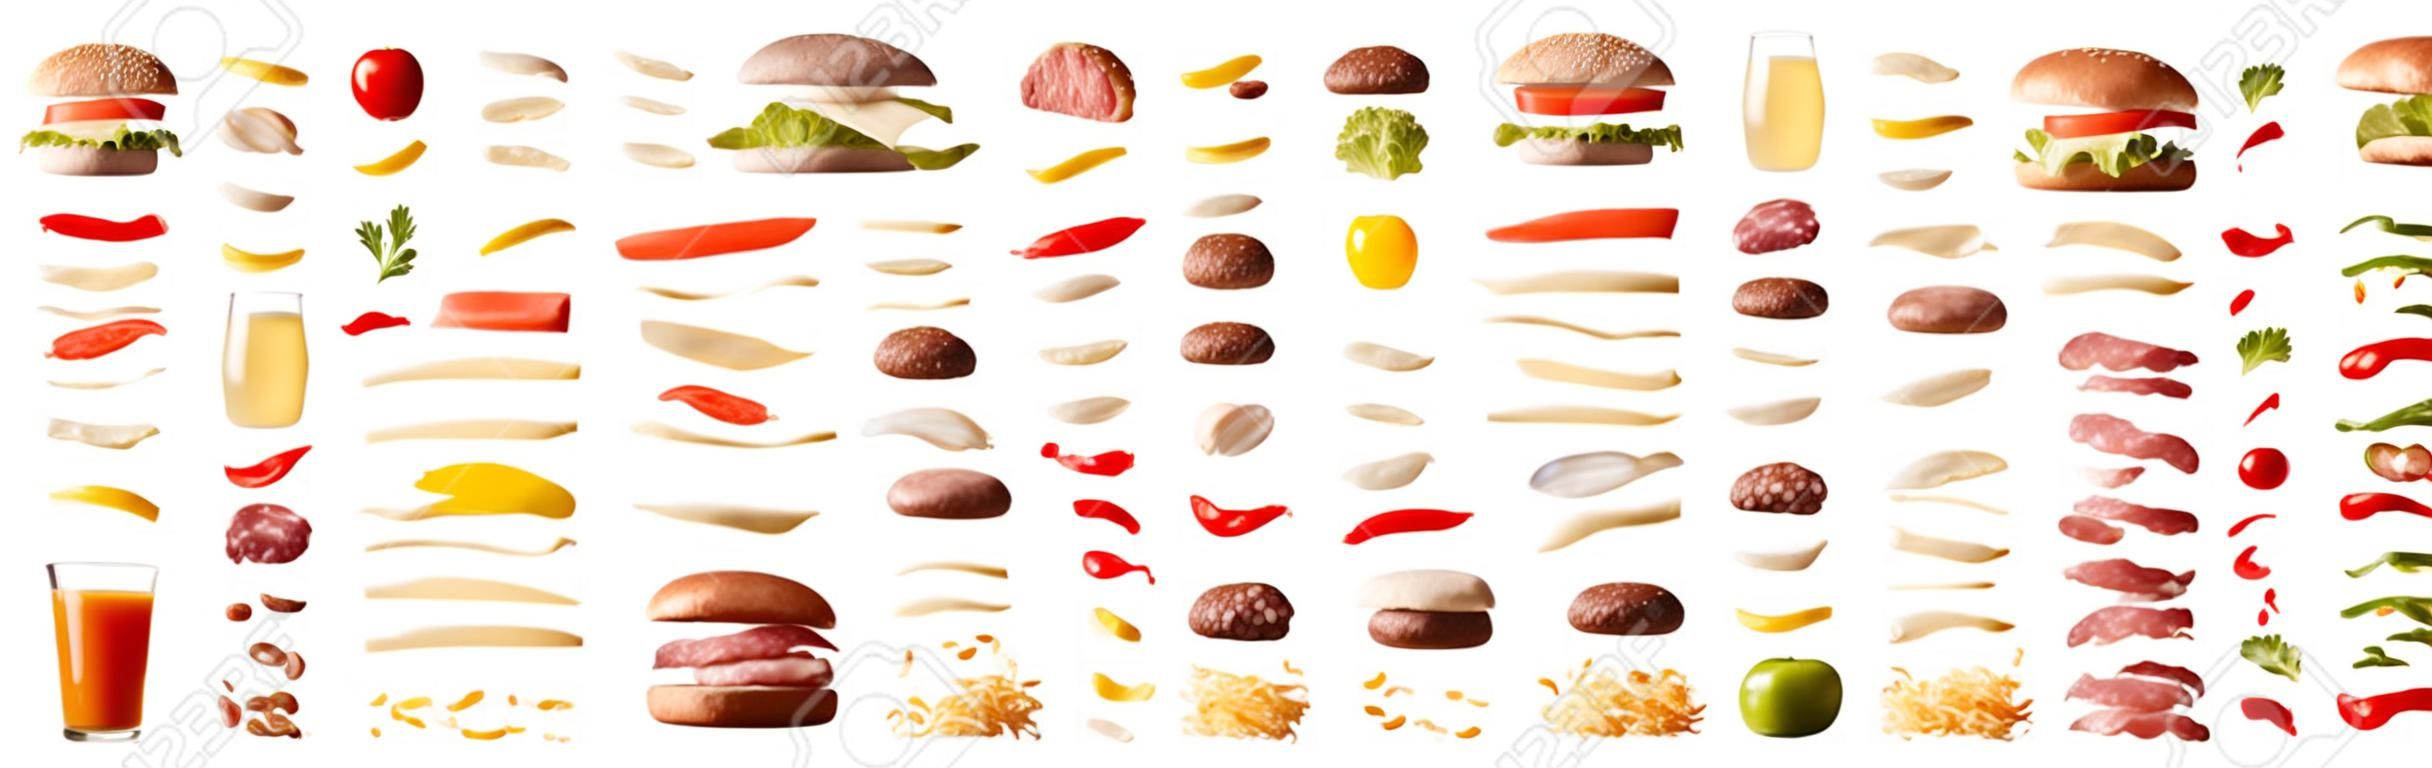 Set van verschillende hamburgers met ingrediënten gescheiden door lagen op witte geïsoleerde achtergrond. Vooraanzicht. Horizontale samenstelling.